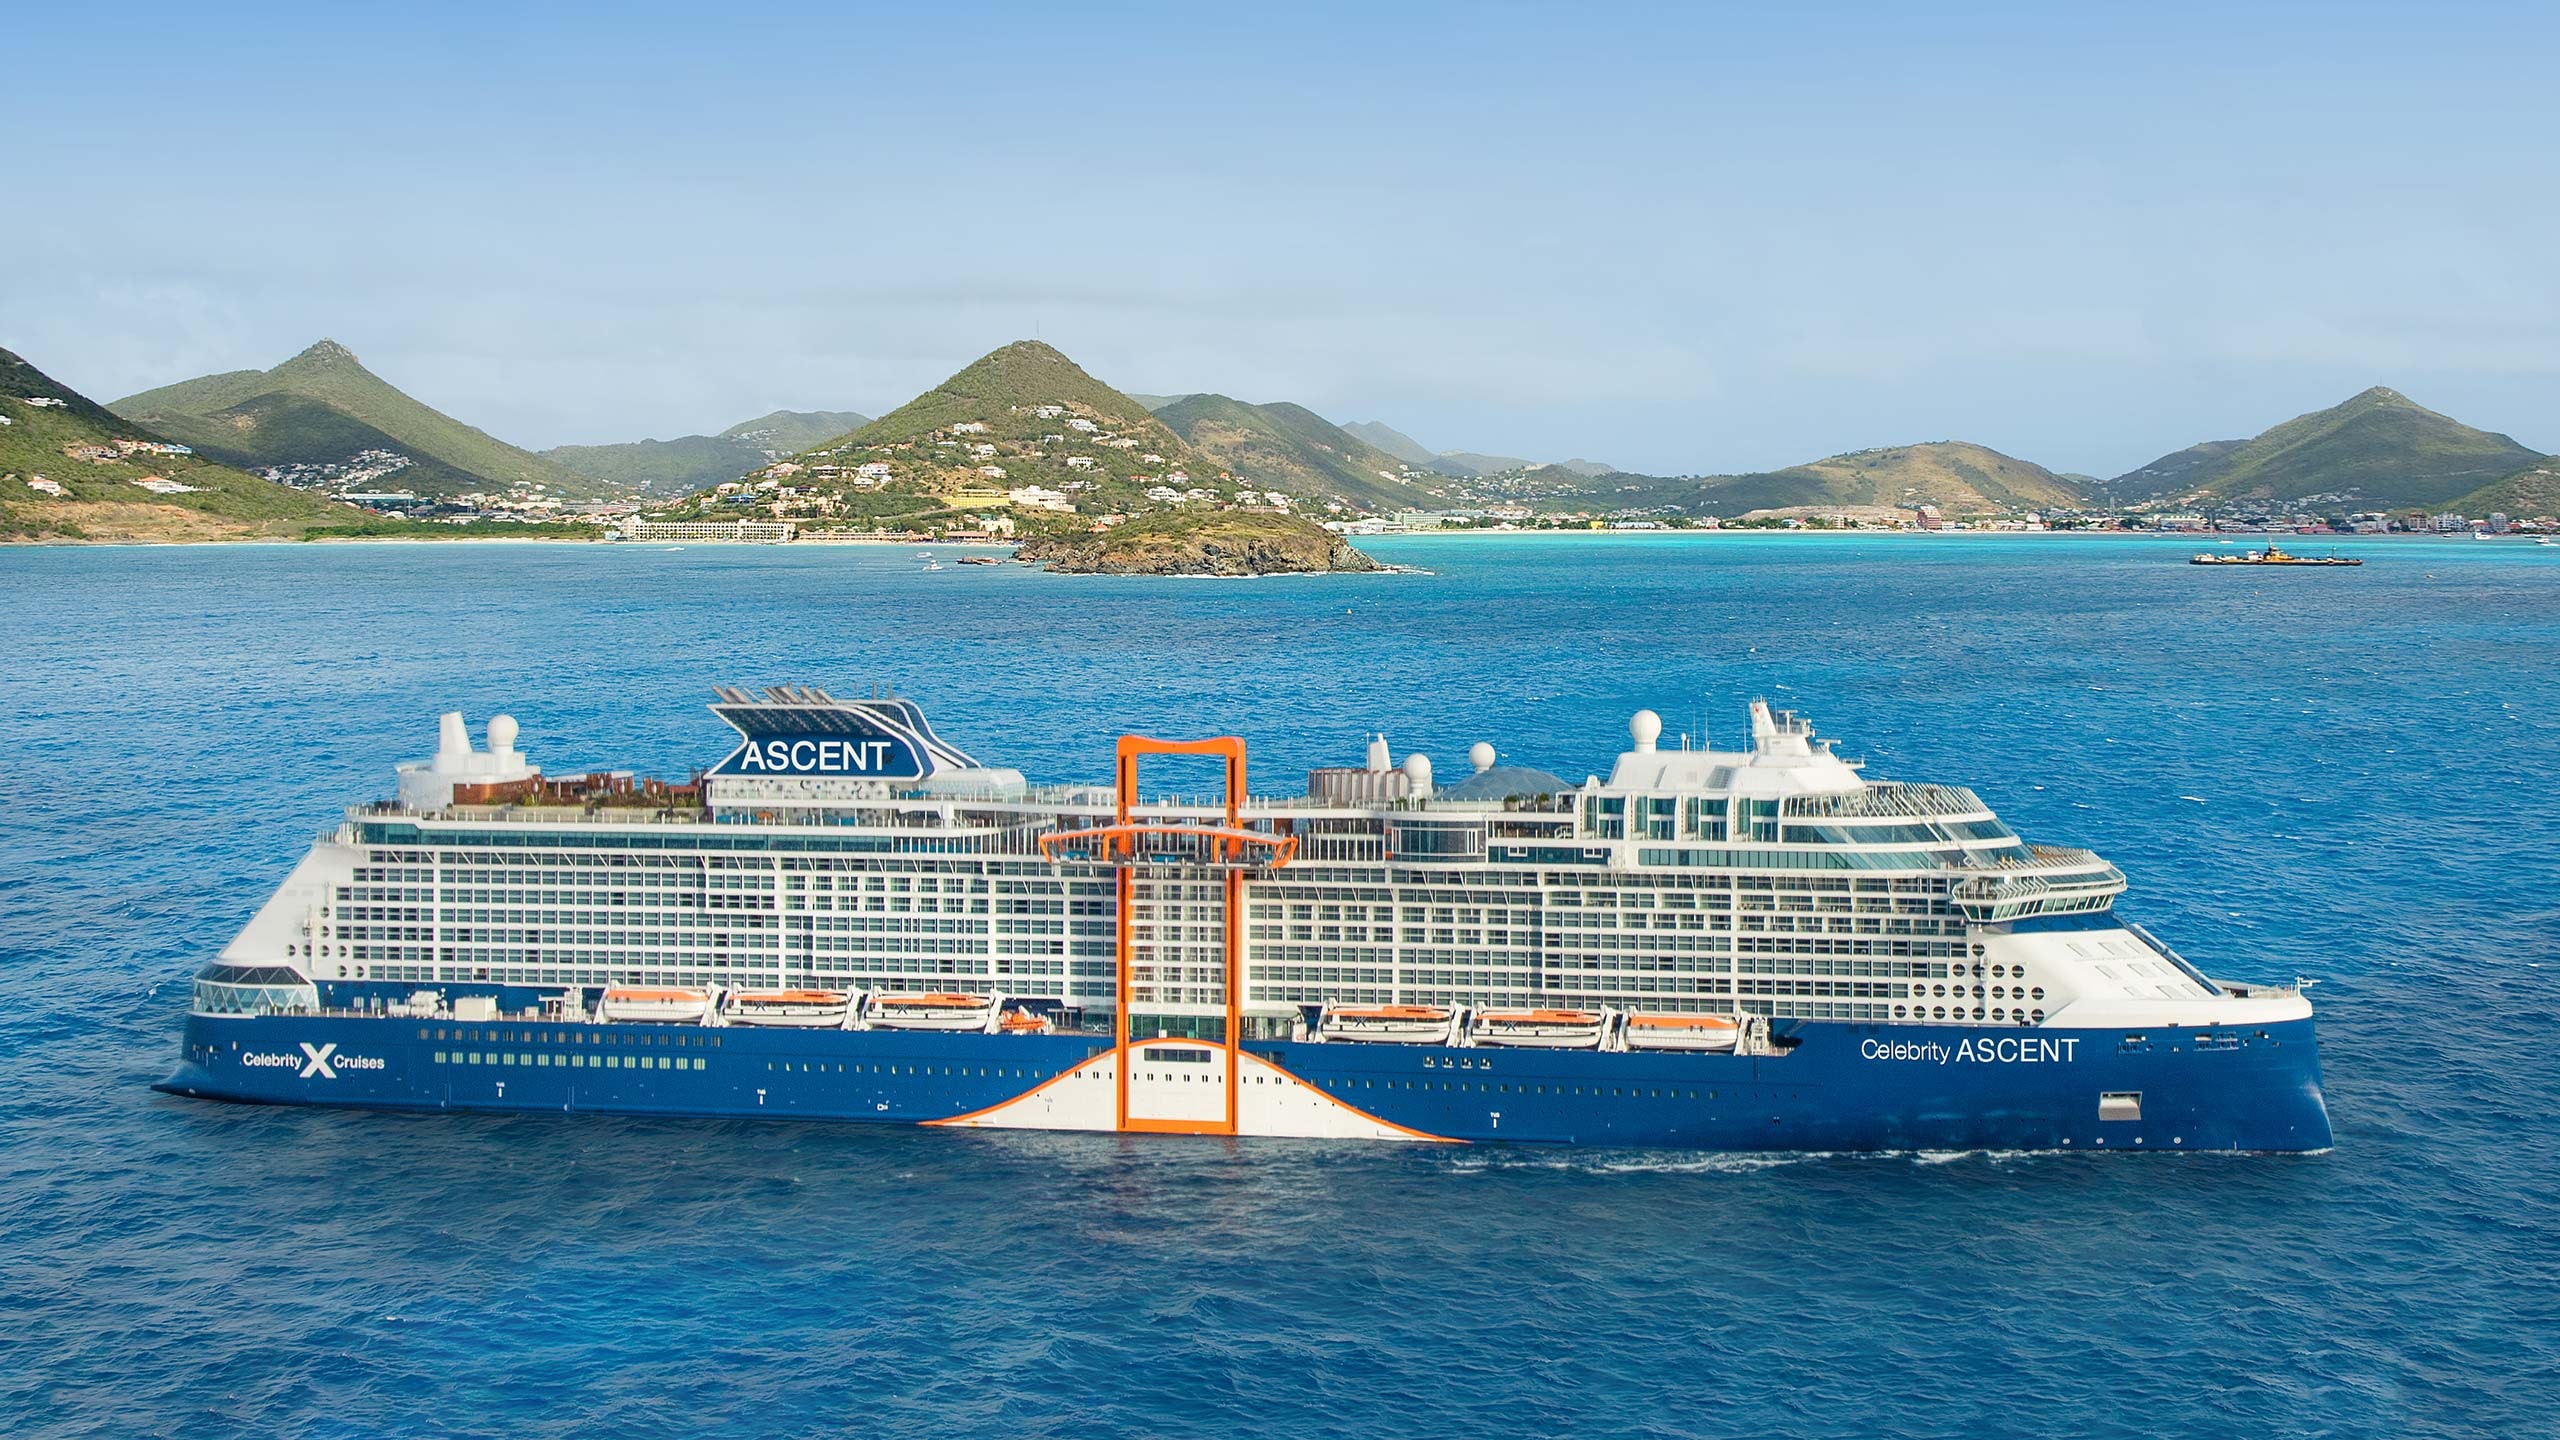 Conheça o mais novo navio de cruzeiros da Celebrity Cruises, o Celebrity Ascent